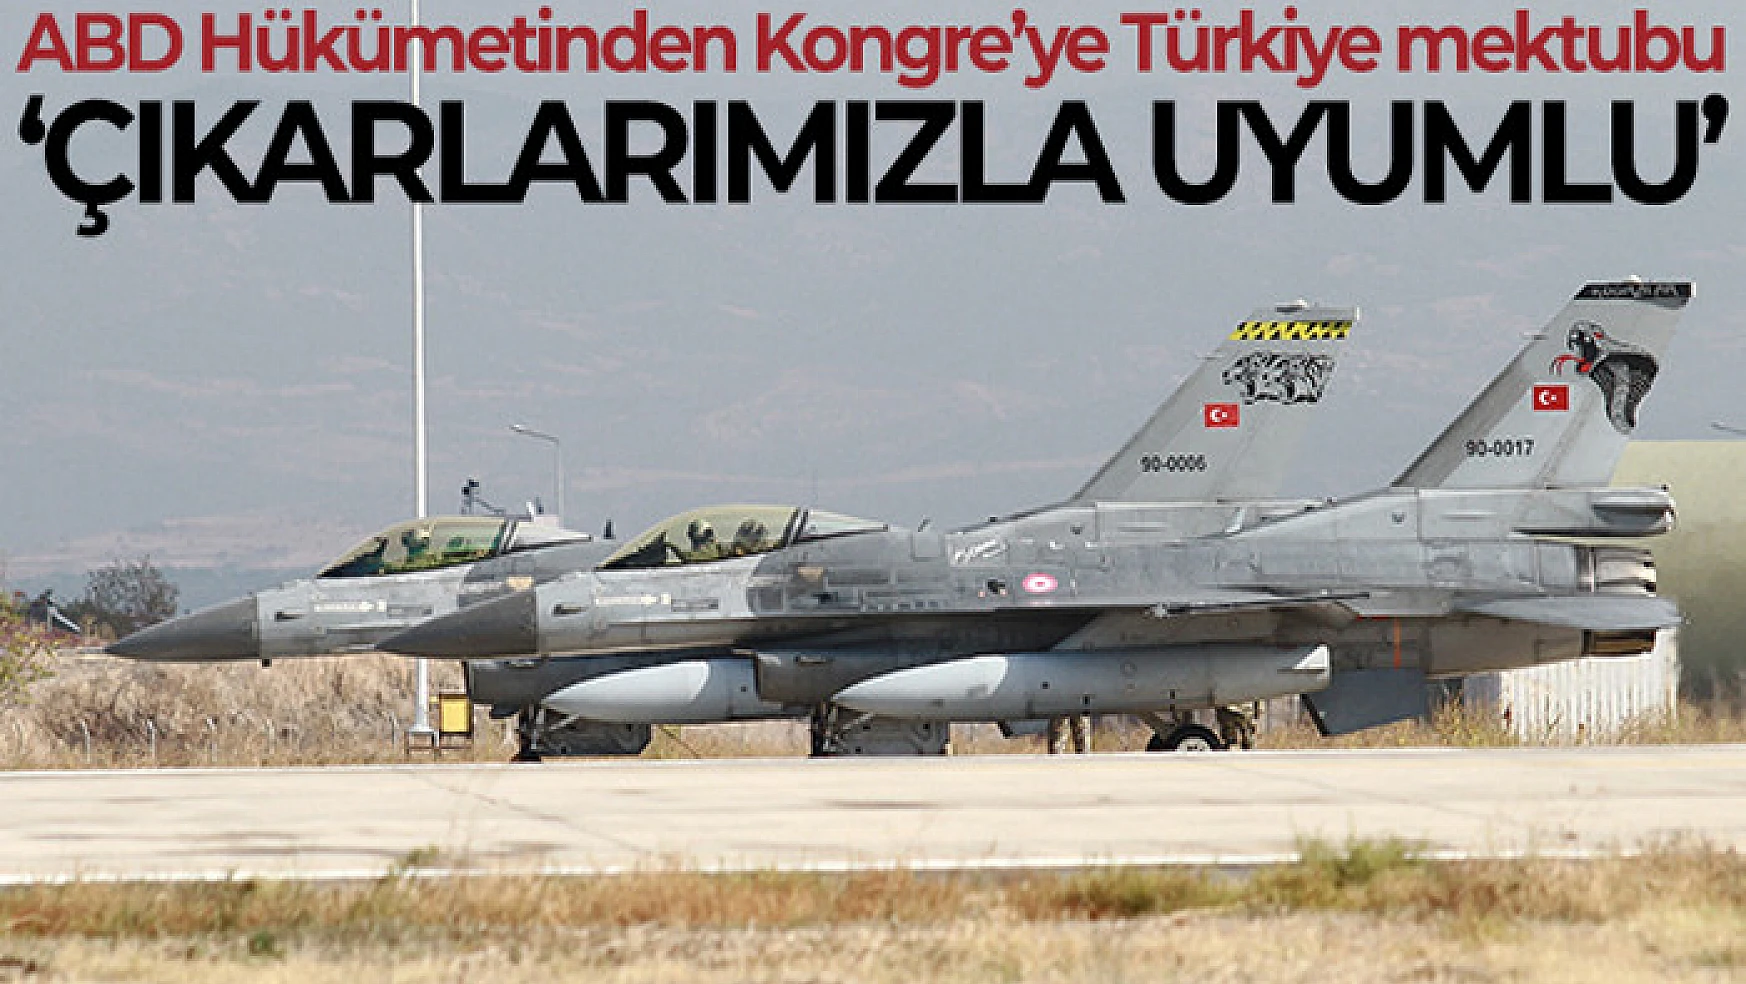 ABD Dışişleri Bakanlığı'ndan Kongre'ye Türkiye'ye F-16 satılması için tavsiye mektubu